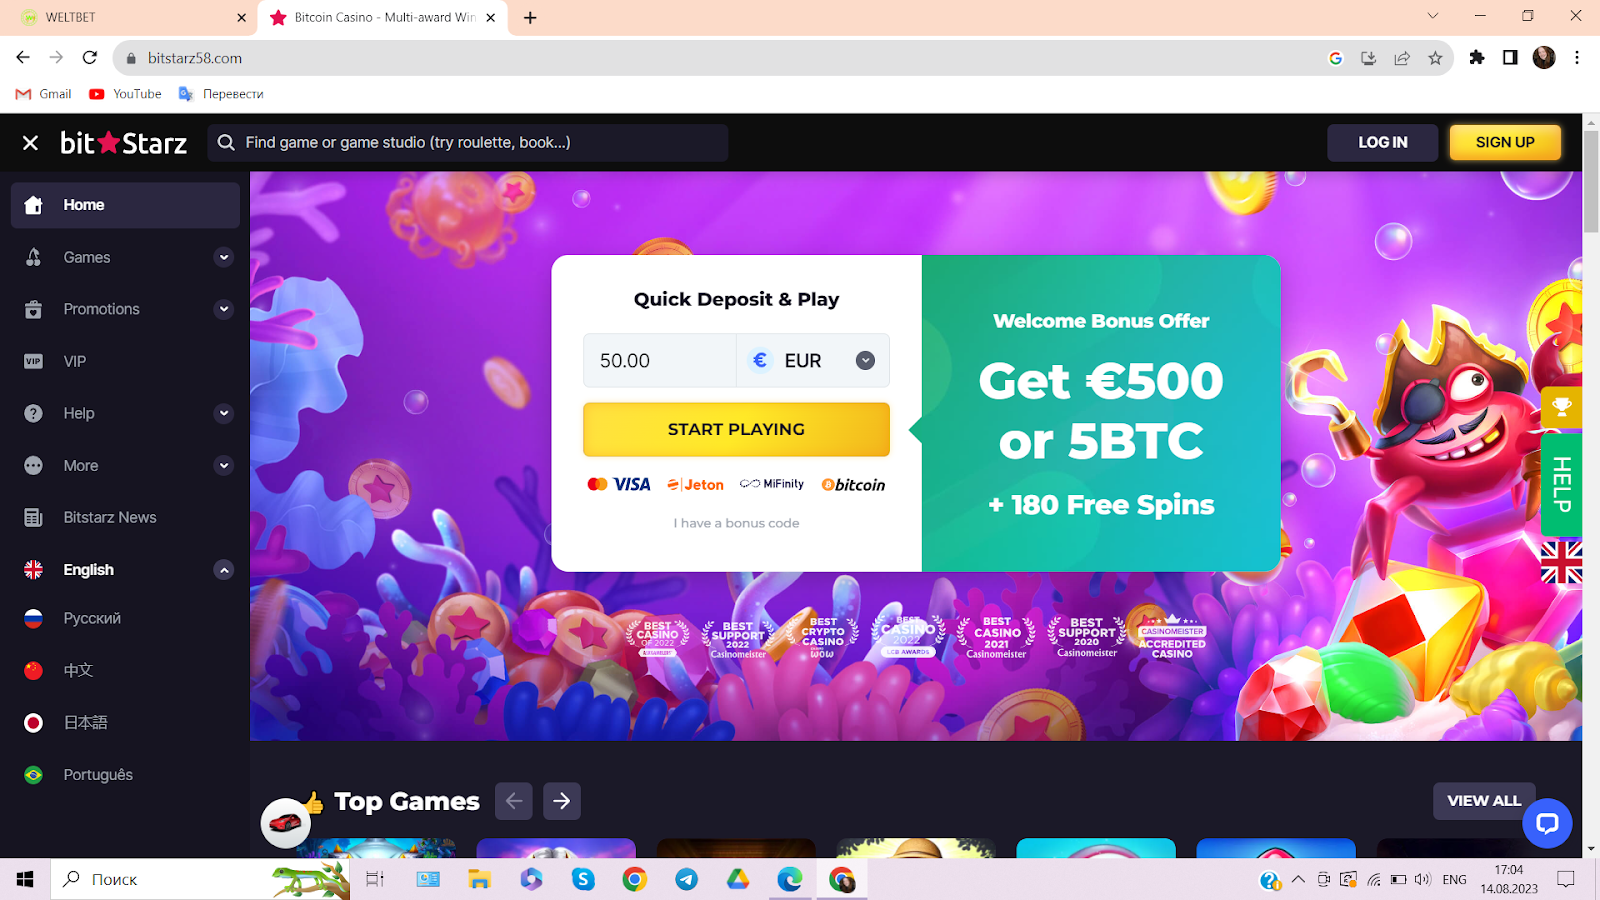 Bitstarz casino homepage